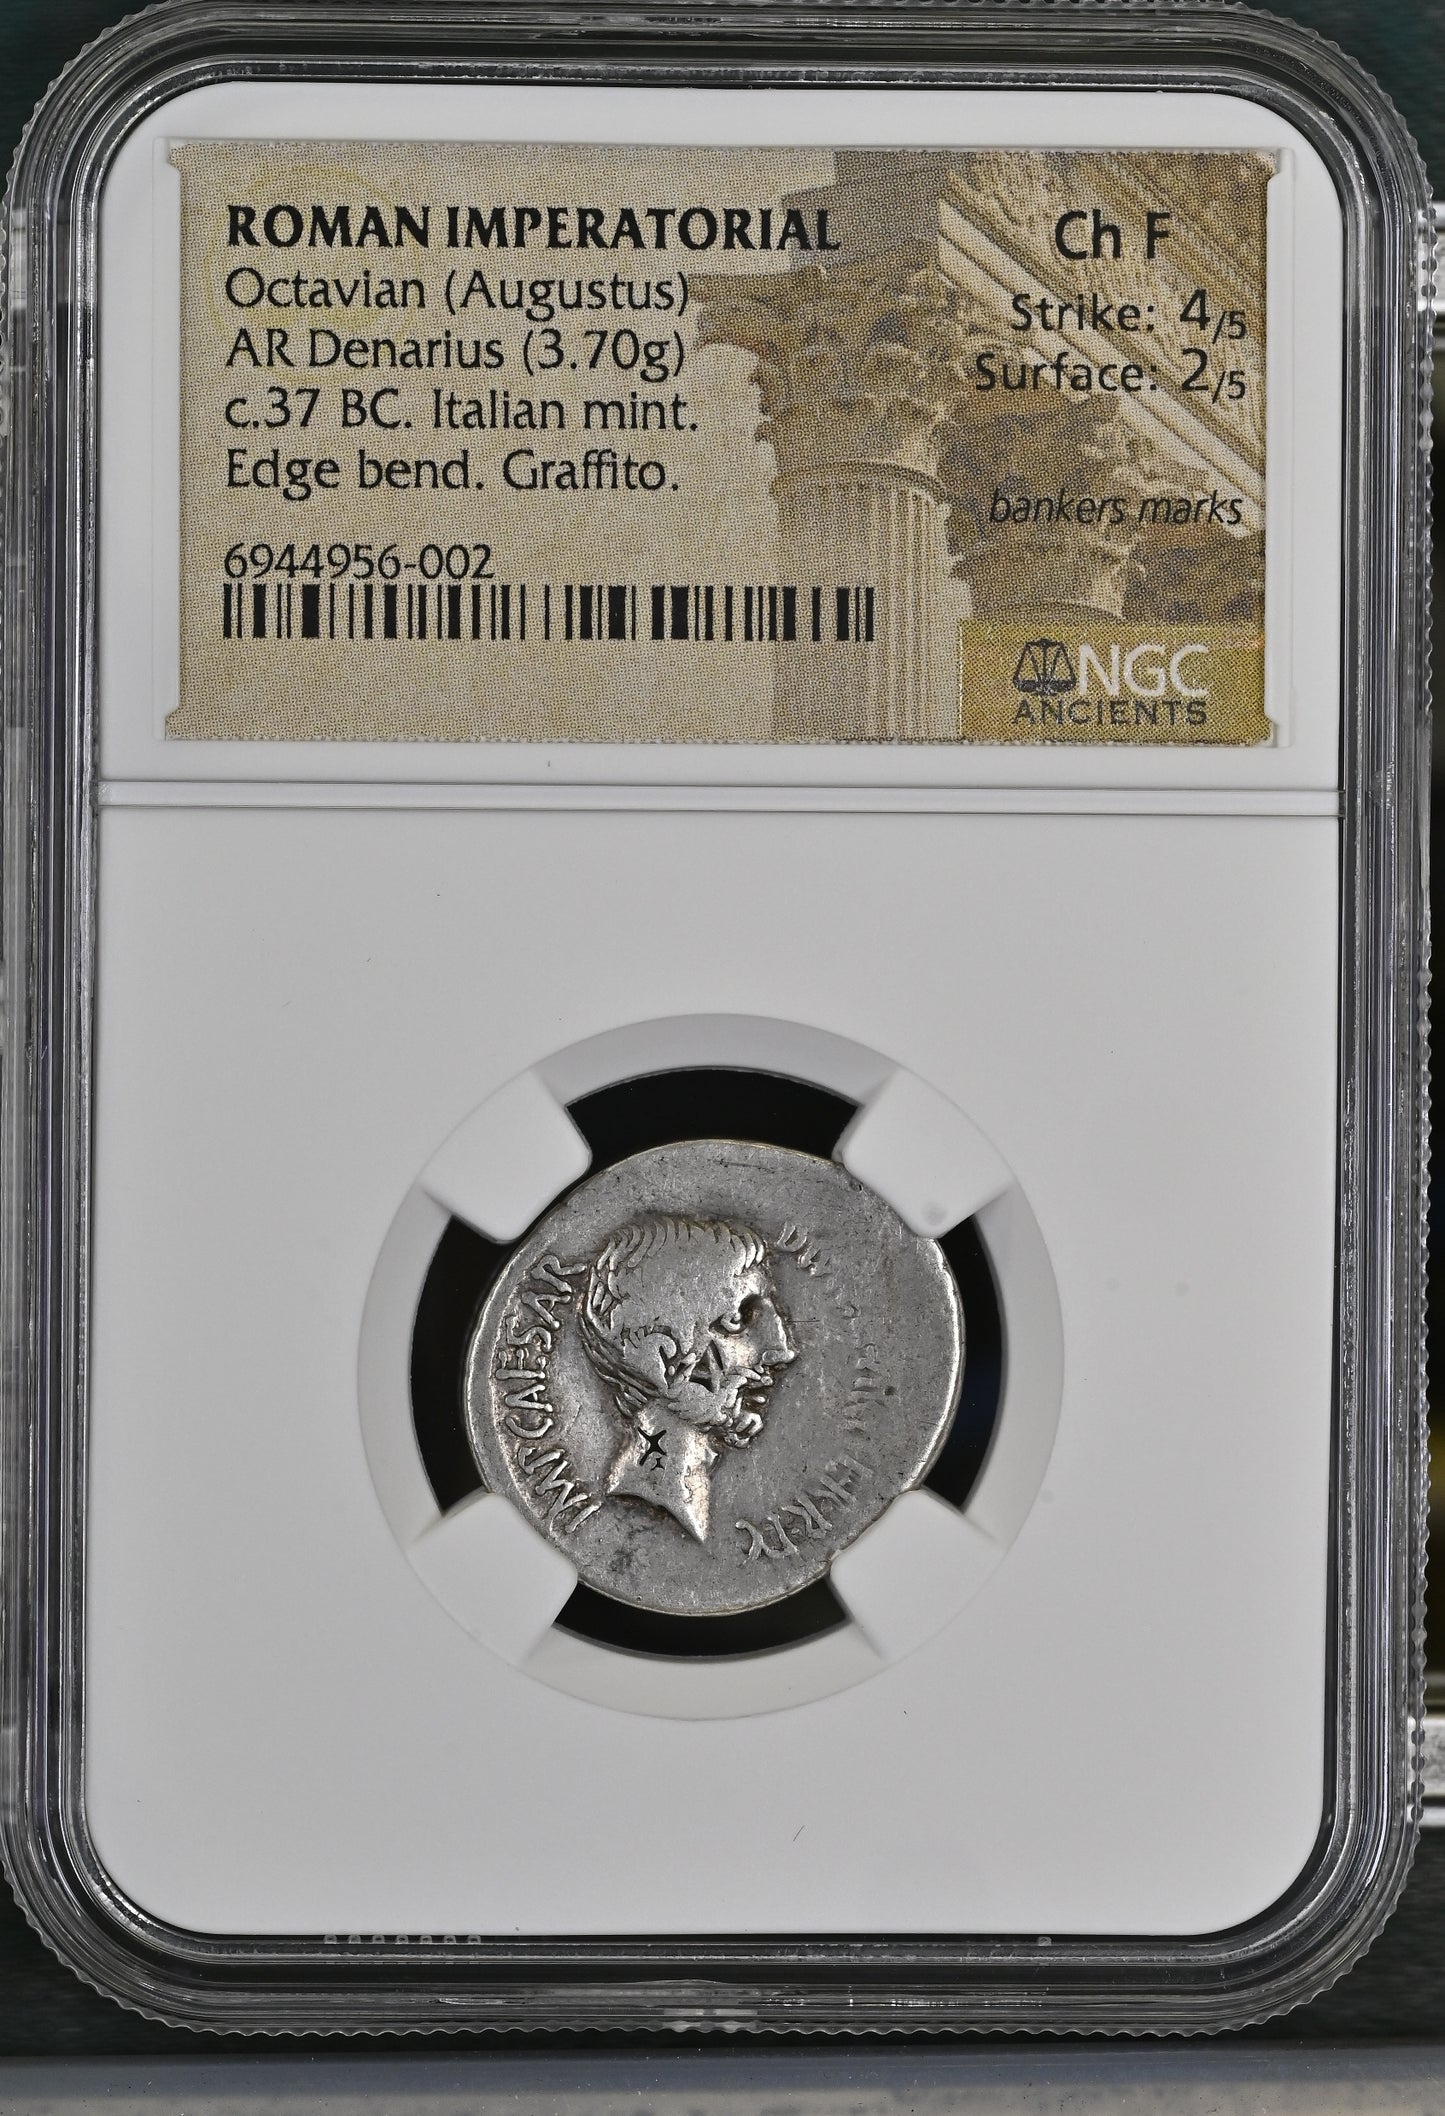 Roman Imperatorial - Octavian (Augustus) - Silver Denarius - NGC Ch F - Crawford 538/1